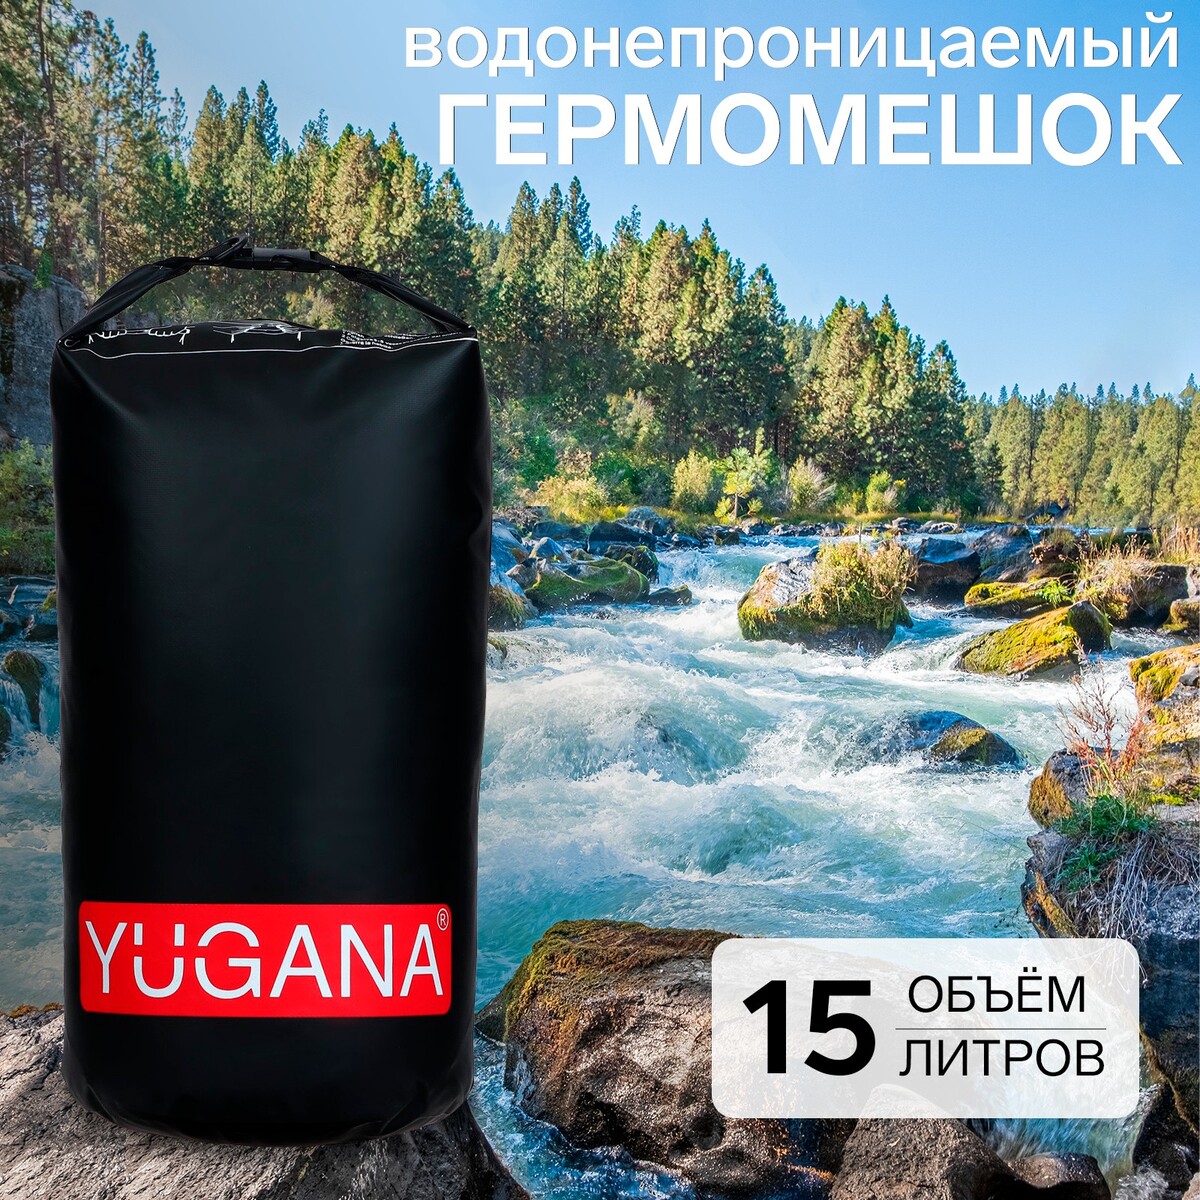 Гермомешок yugana, пвх, водонепроницаемый 15 литров, один ремень, черный